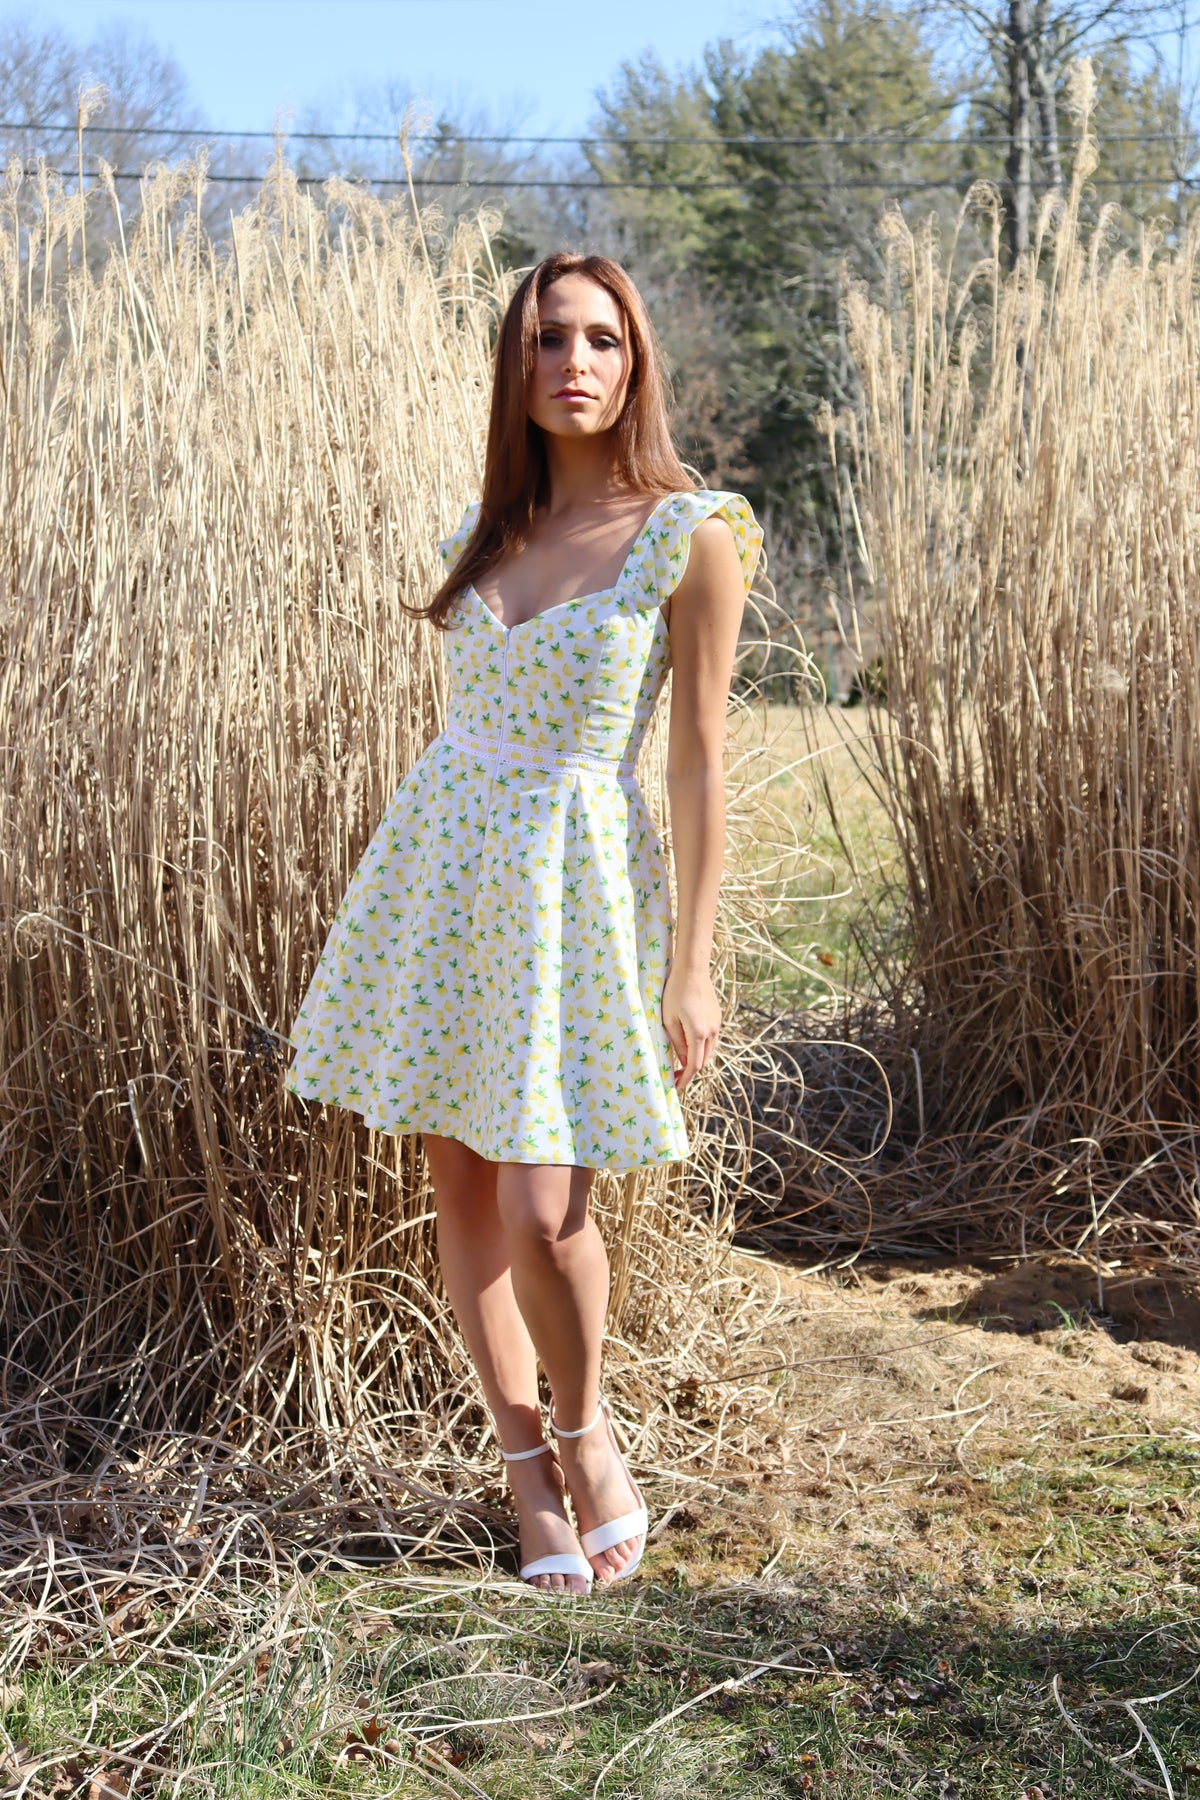 Model in lemon print dress in front of a field of hay.